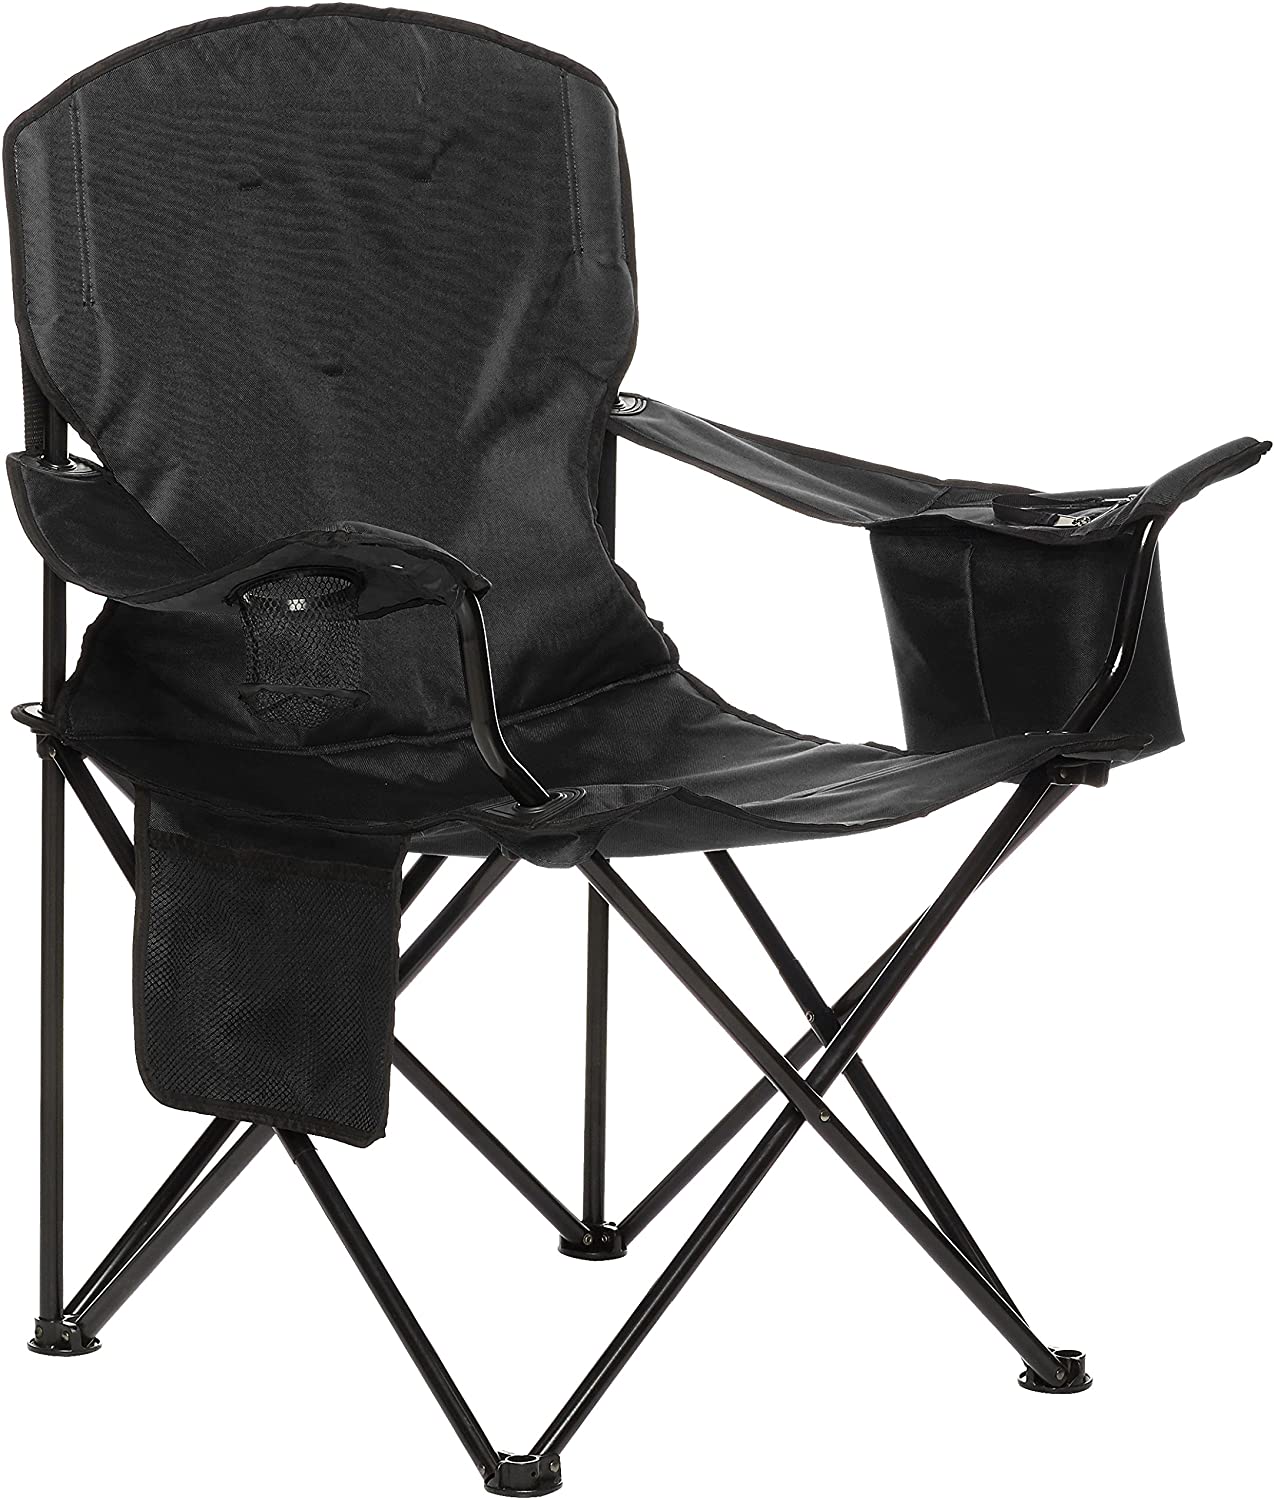 AmazonBasics Portable Camping Chair